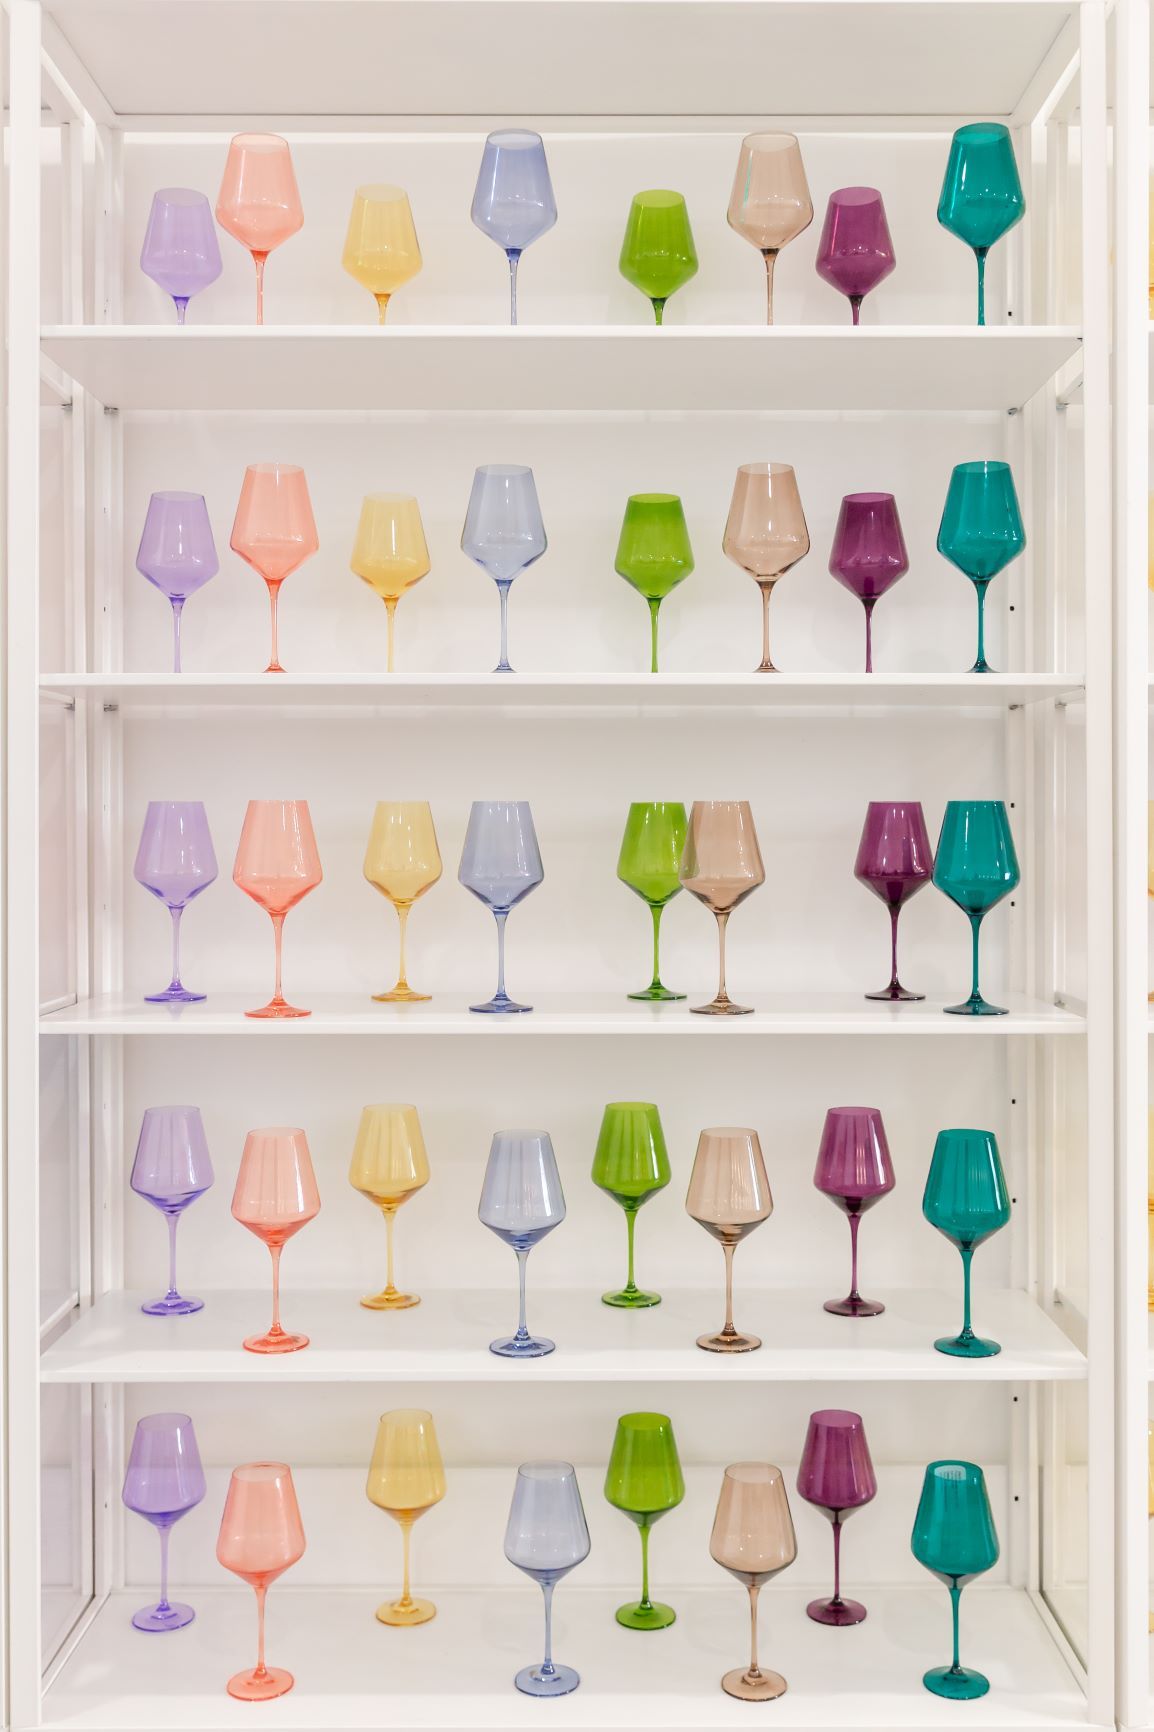 All Glassware – Estelle Colored Glass